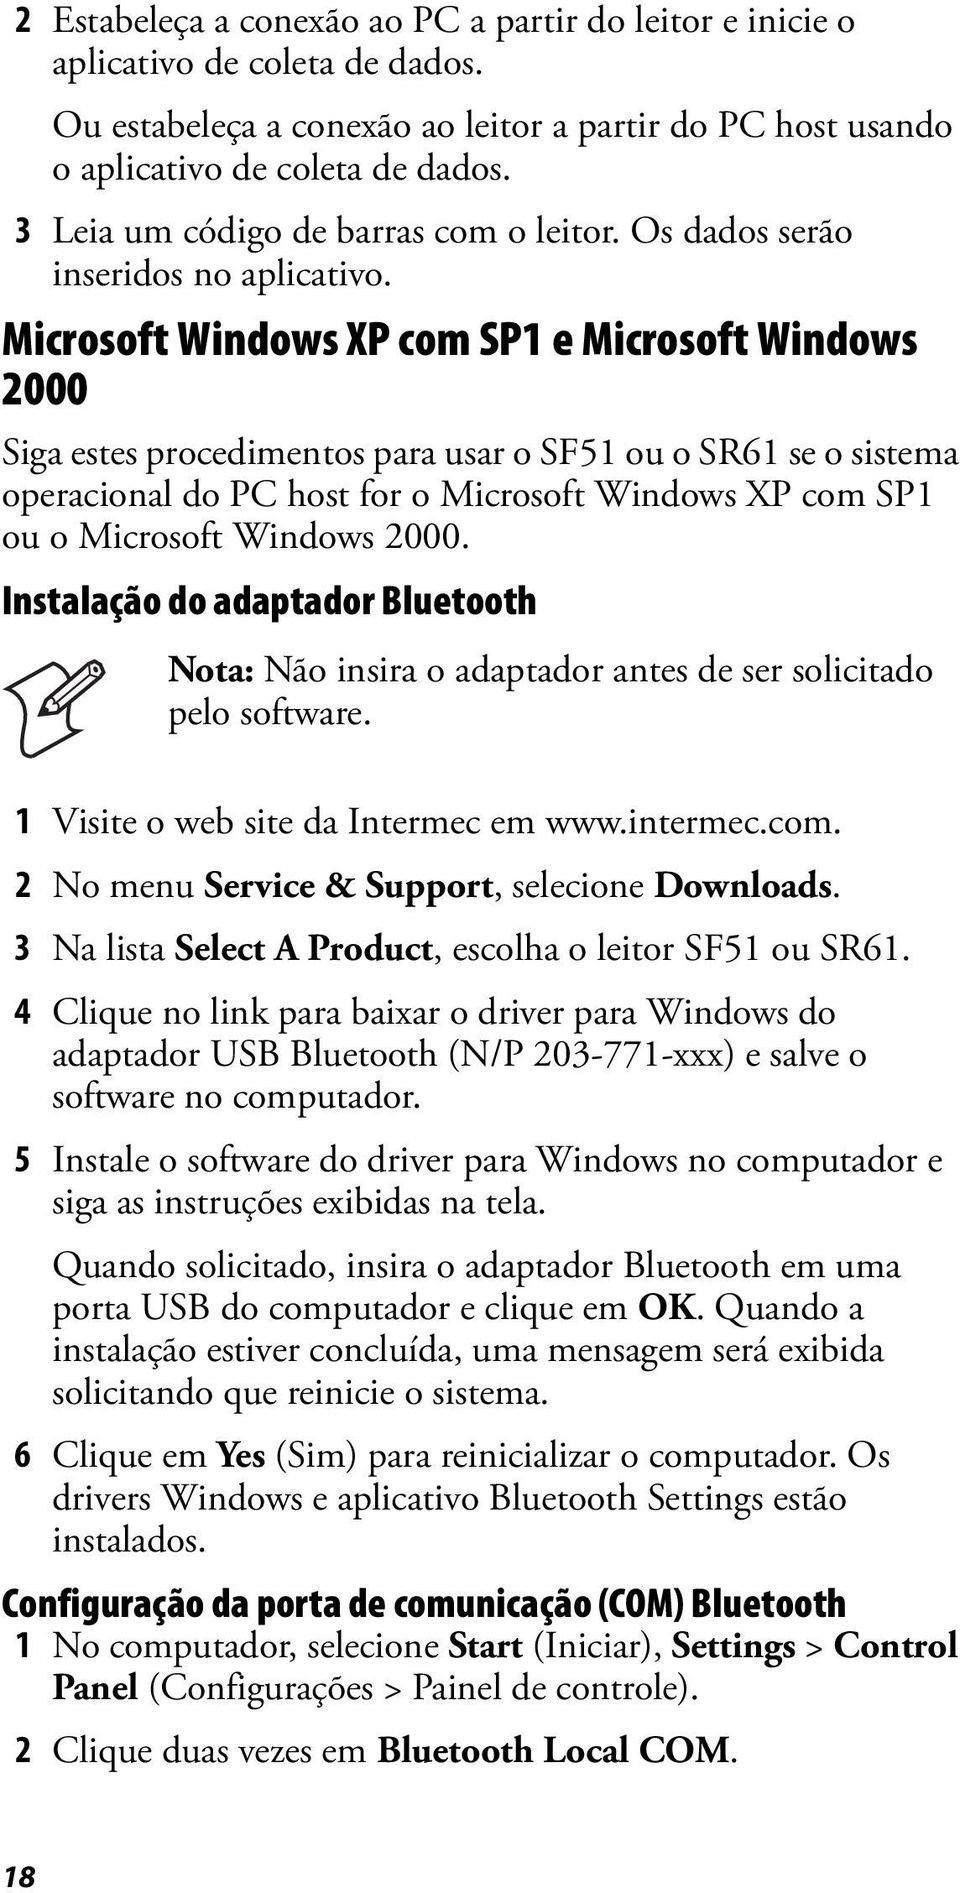 Microsoft Windows XP com SP1 e Microsoft Windows 2000 Siga estes procedimentos para usar o SF51 ou o SR61 se o sistema operacional do PC host for o Microsoft Windows XP com SP1 ou o Microsoft Windows